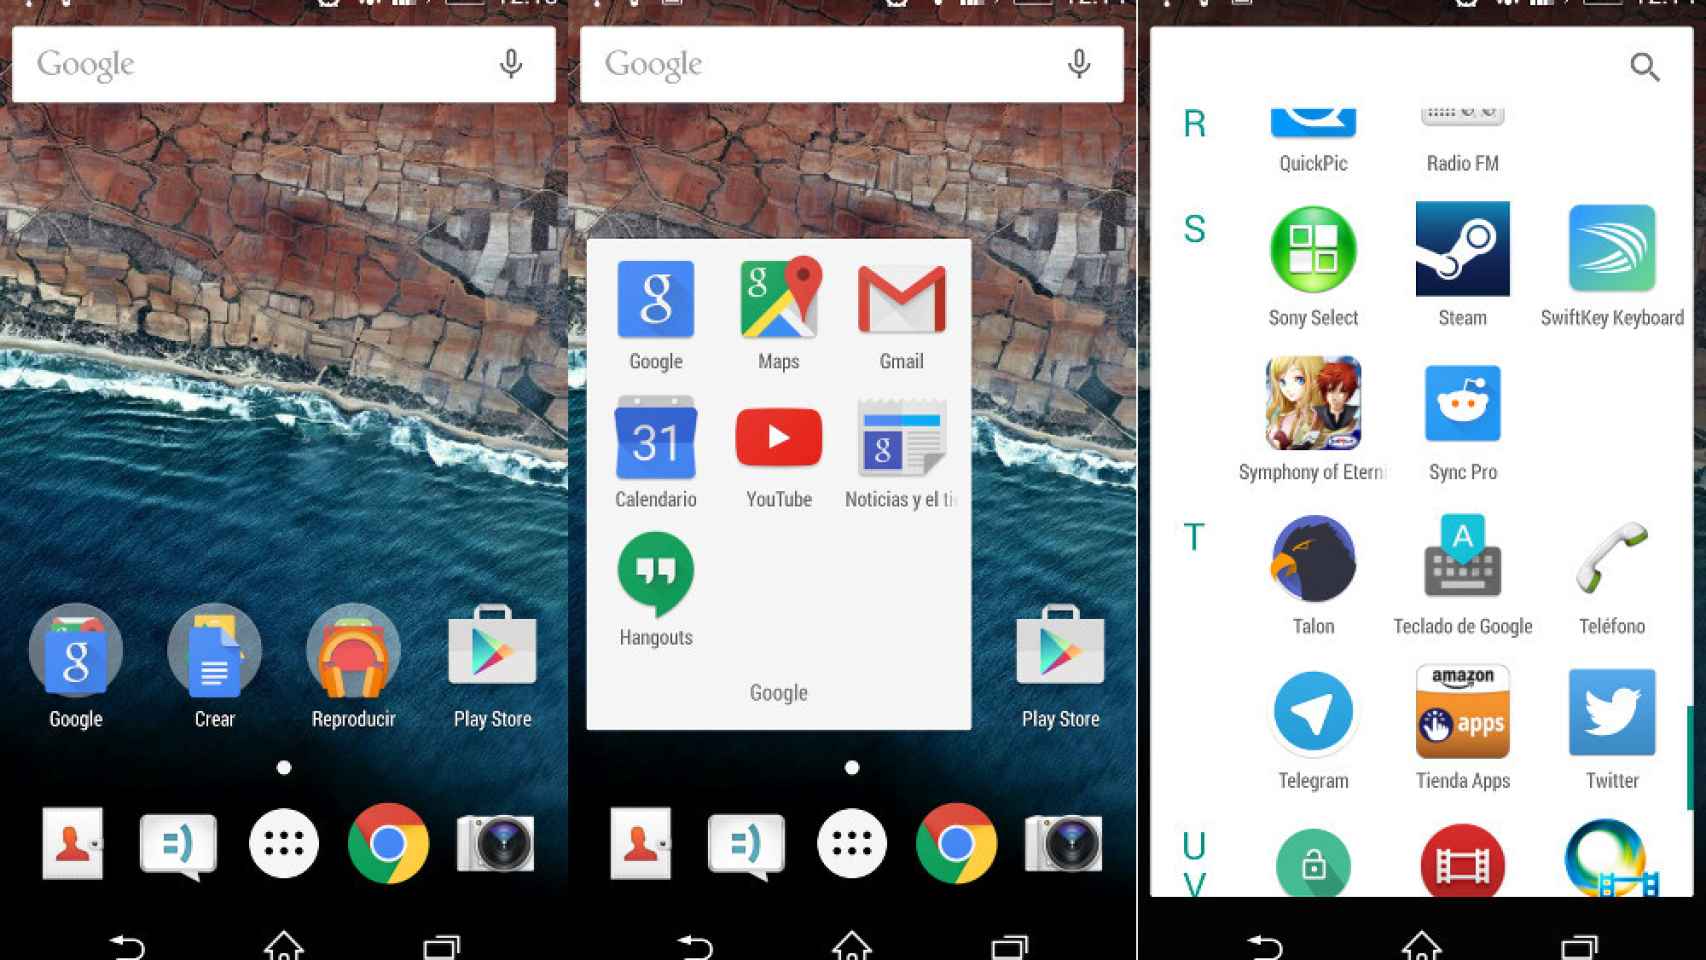 Instala el launcher, fondo de pantalla y más de Android M en tu móvil [APK]